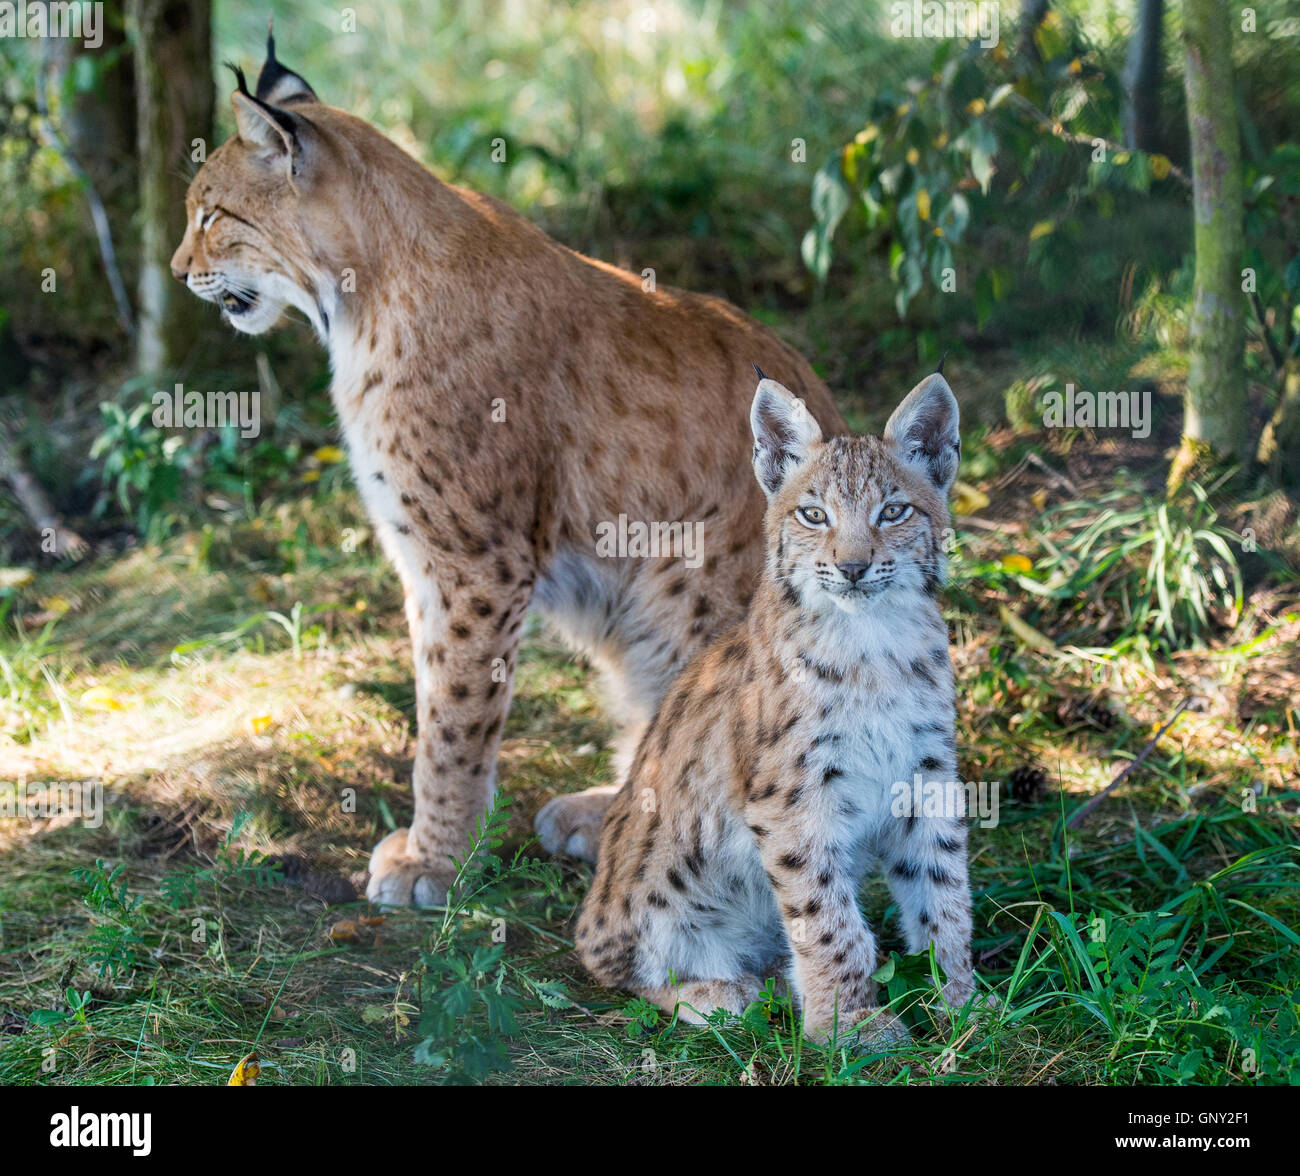 Schoenebeck brut, de l'Allemagne. Du 1er septembre 2016. Une femelle lynx (Lynx lynx) et sa progéniture peut être vu dans un enclos au parc Schorfheide brut en Allemagne, Schoenebeck, 1 septembre 2016. Deux jeunes lynx sont nés à peu près il y a deux mois et demi. Le parc nord de Berlin est habitée par des animaux et certains qui sont probablement éteintes dans la nature. PHOTO : PATRICK PLEUL/dpa/Alamy Live News Banque D'Images